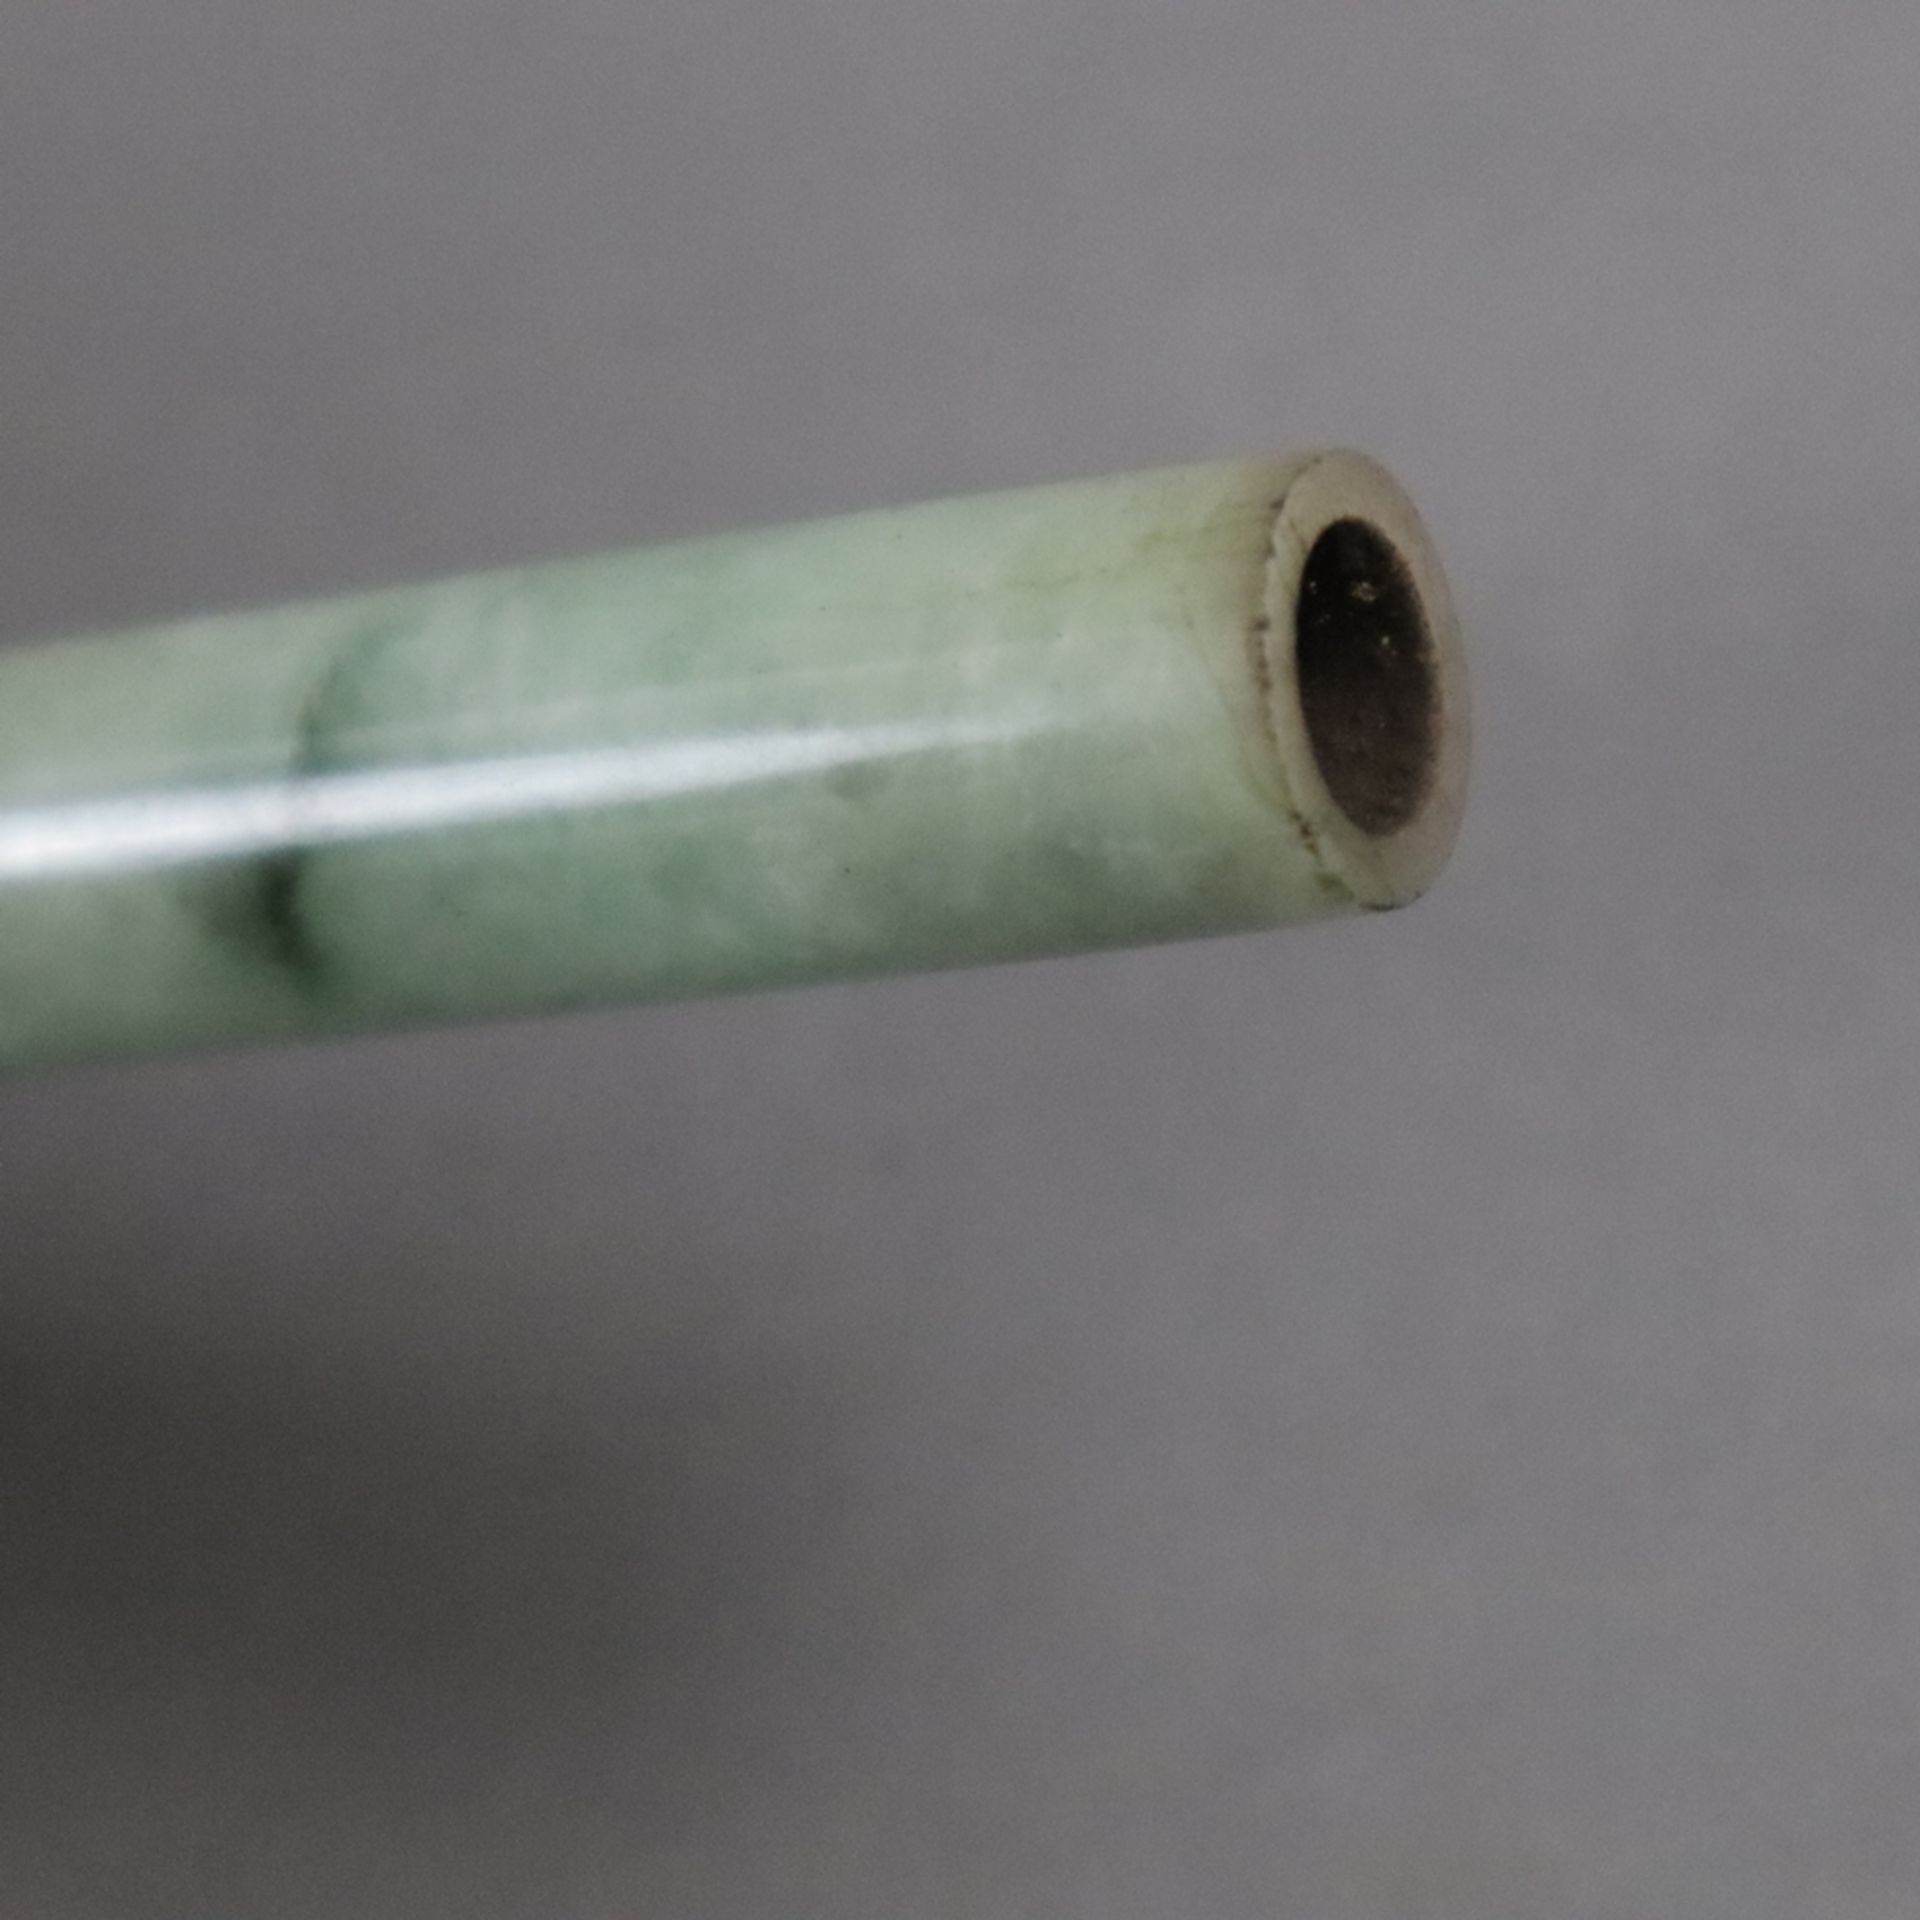 Zigarettenspitze aus Jade - China 20. Jh., seladonfarben gewölkte Jade mit leichten schwarzen Einfä - Bild 4 aus 4